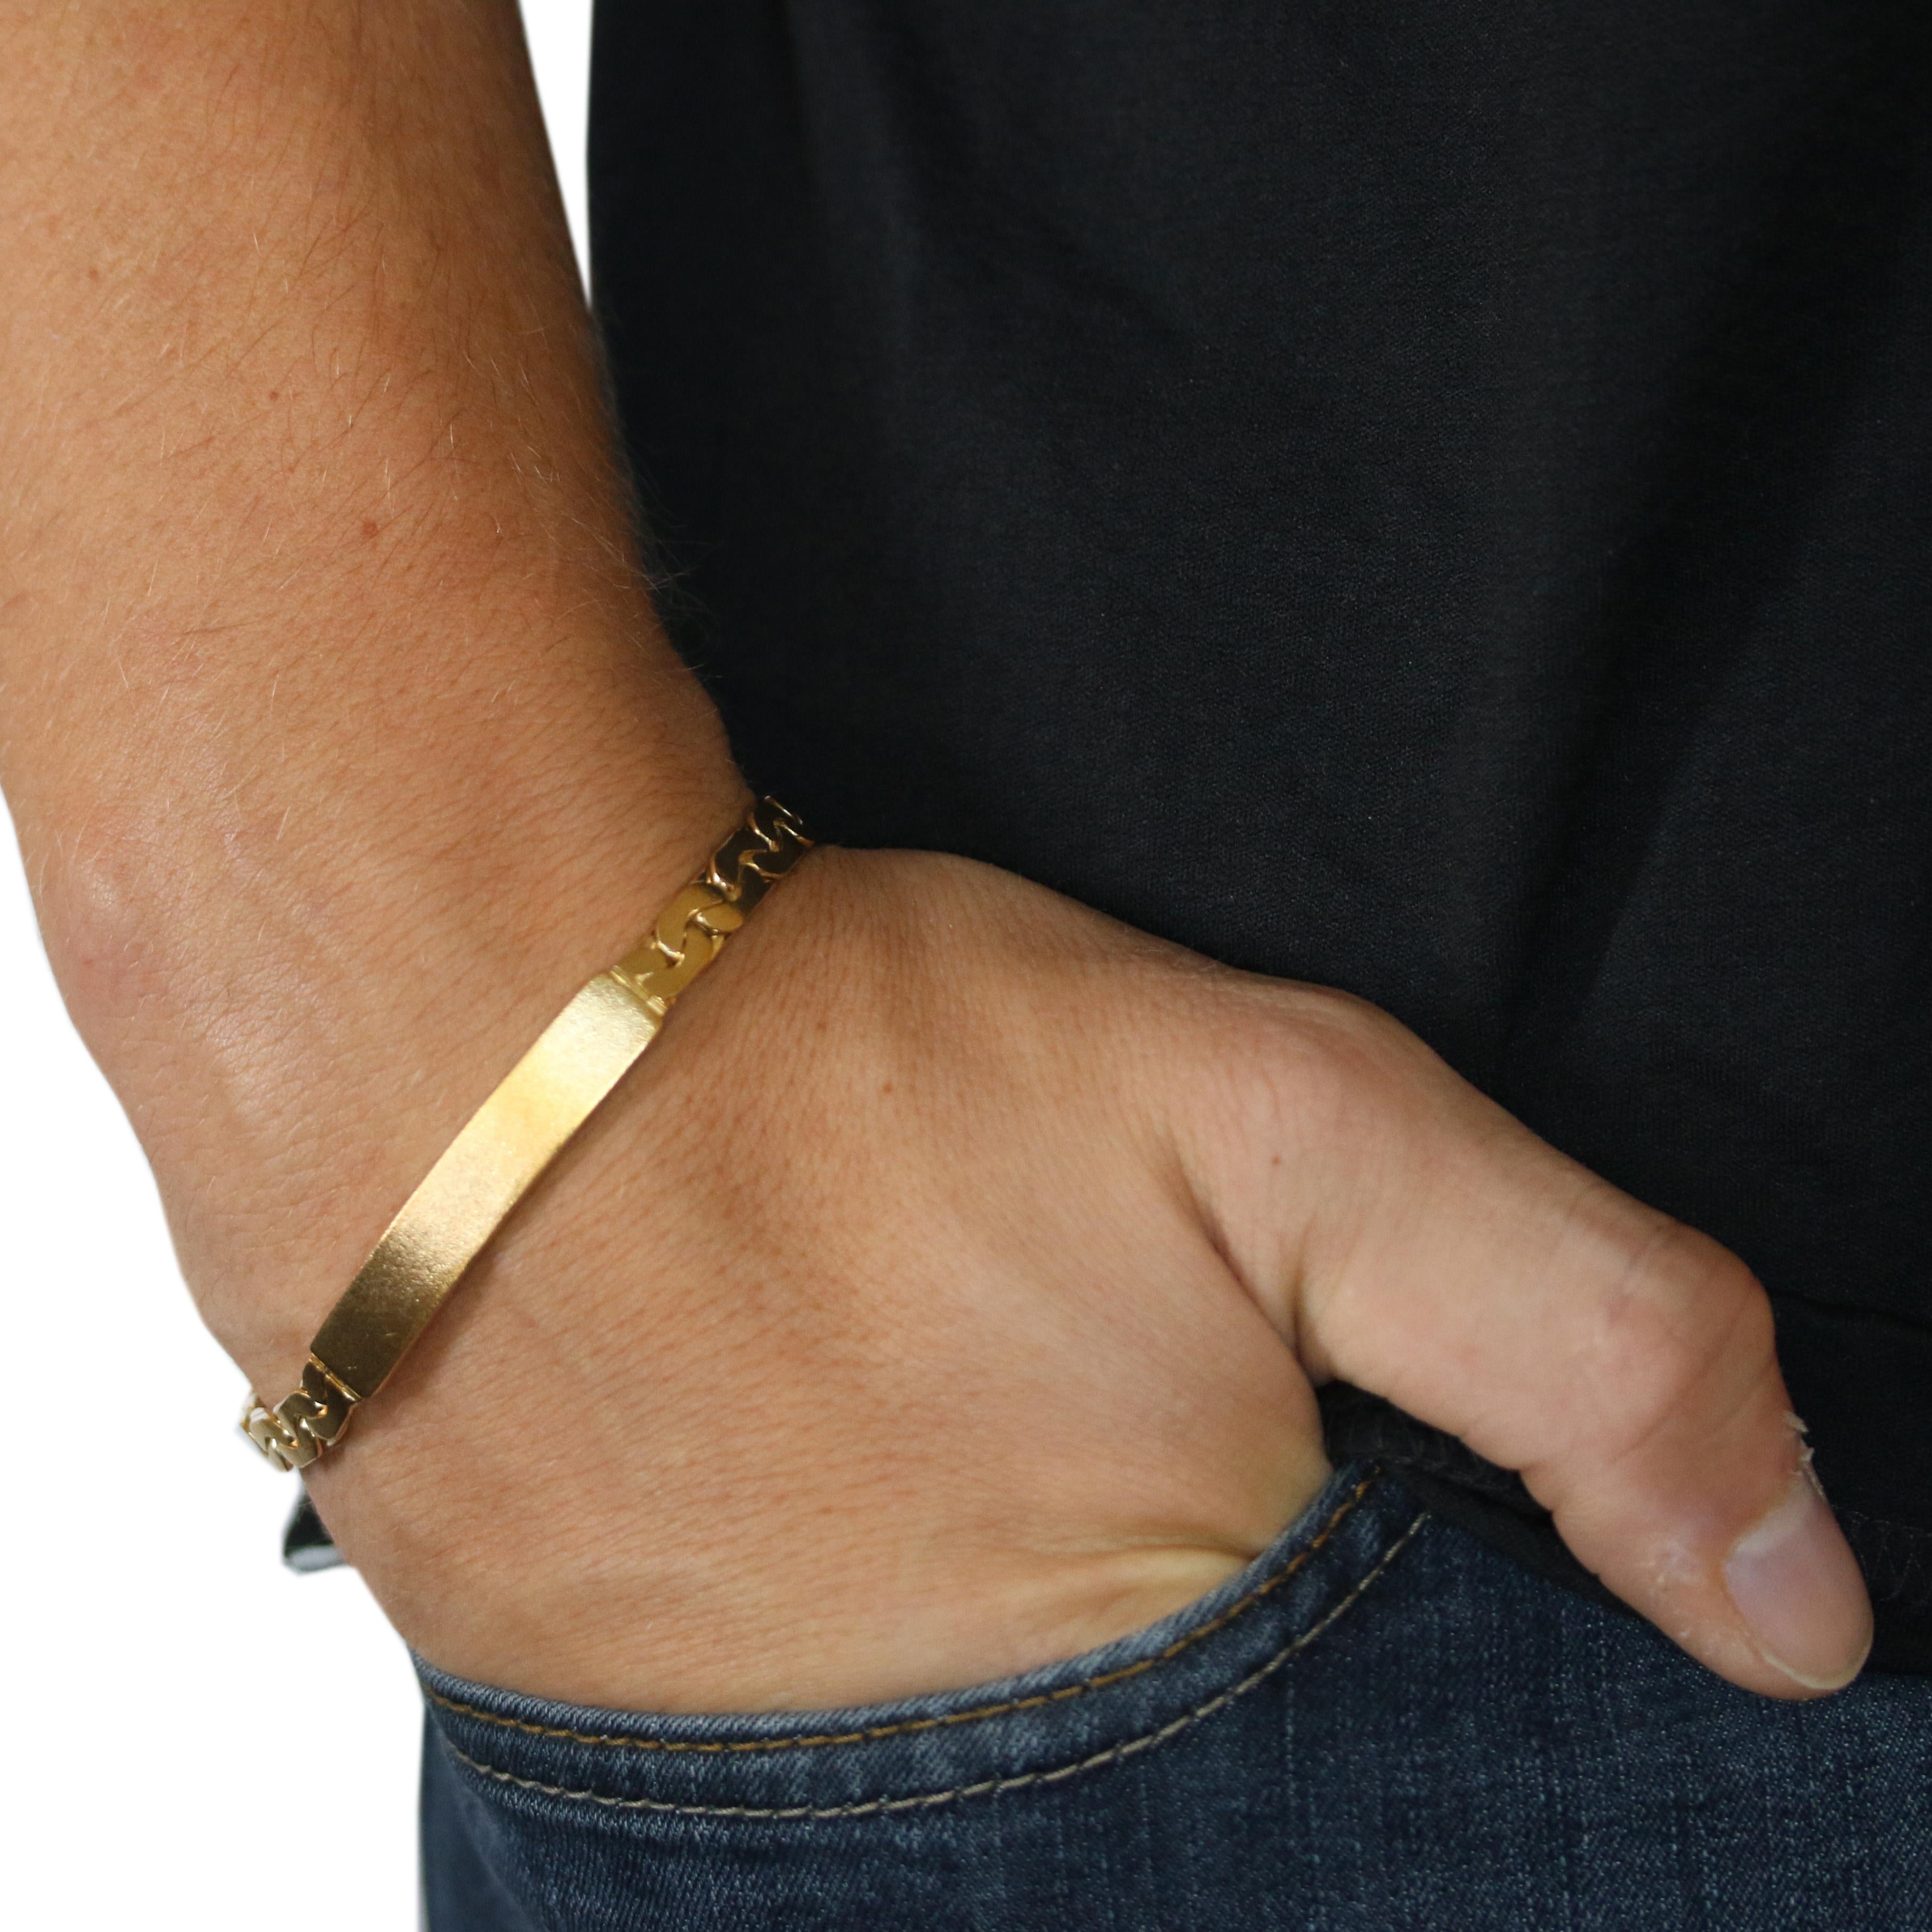 18k gold medical alert bracelet